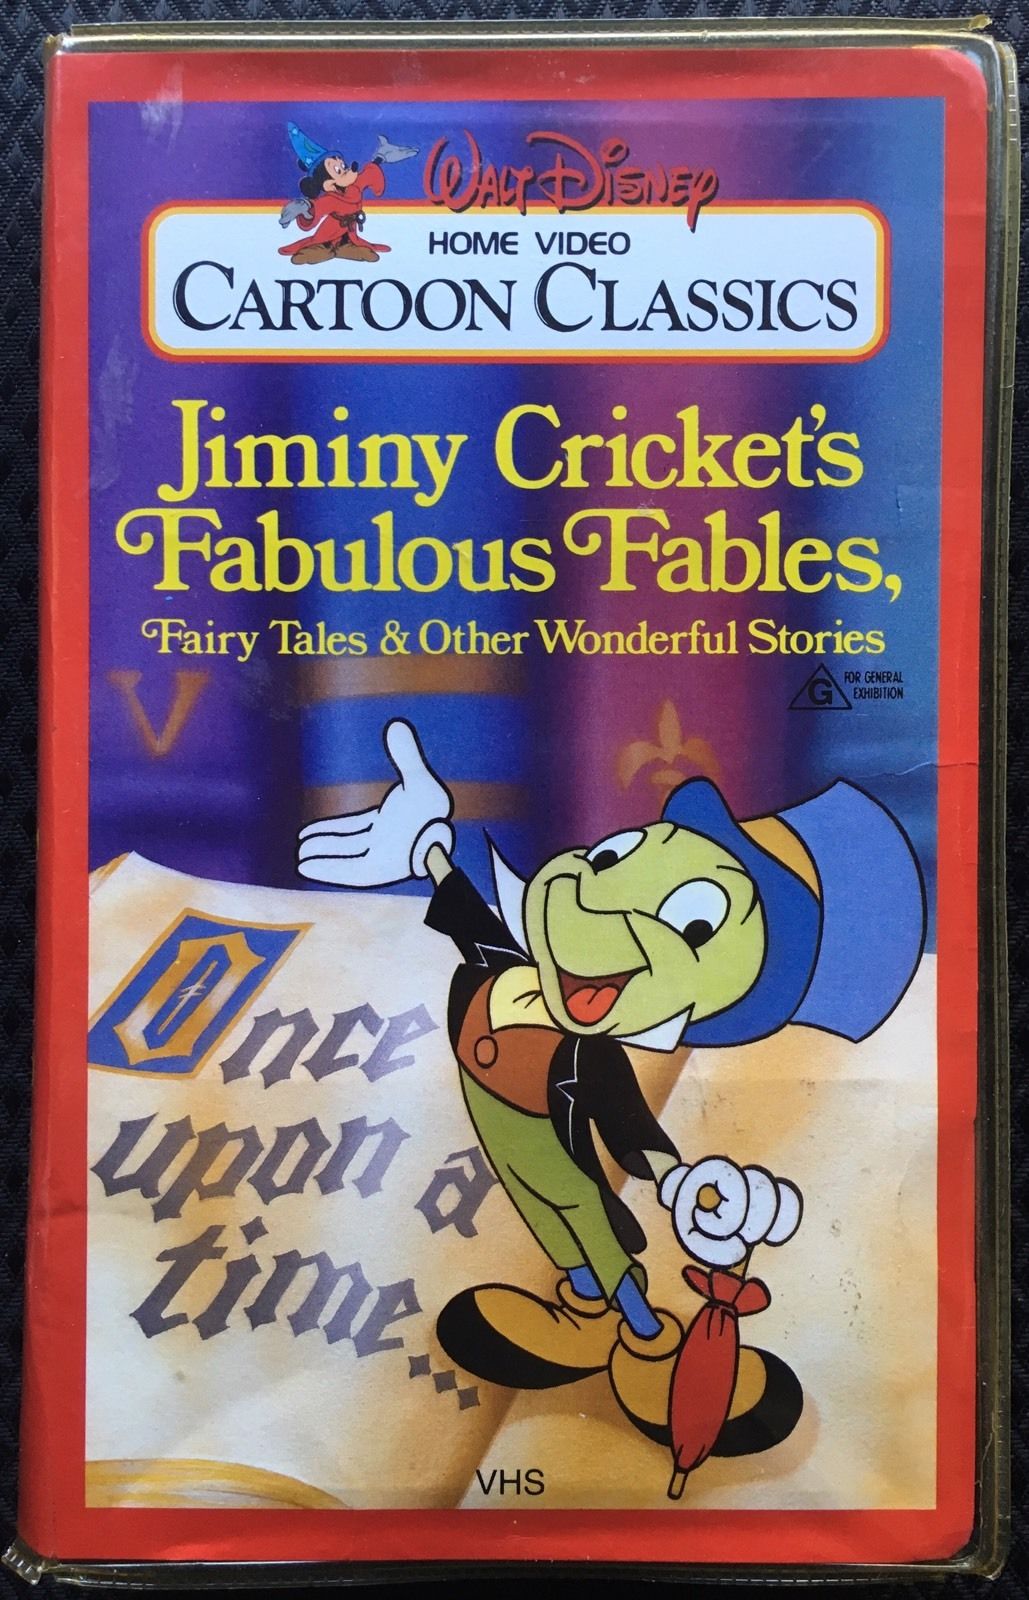 Walt Disney Cartoon Classics | Disney Wiki | FANDOM powered by Wikia